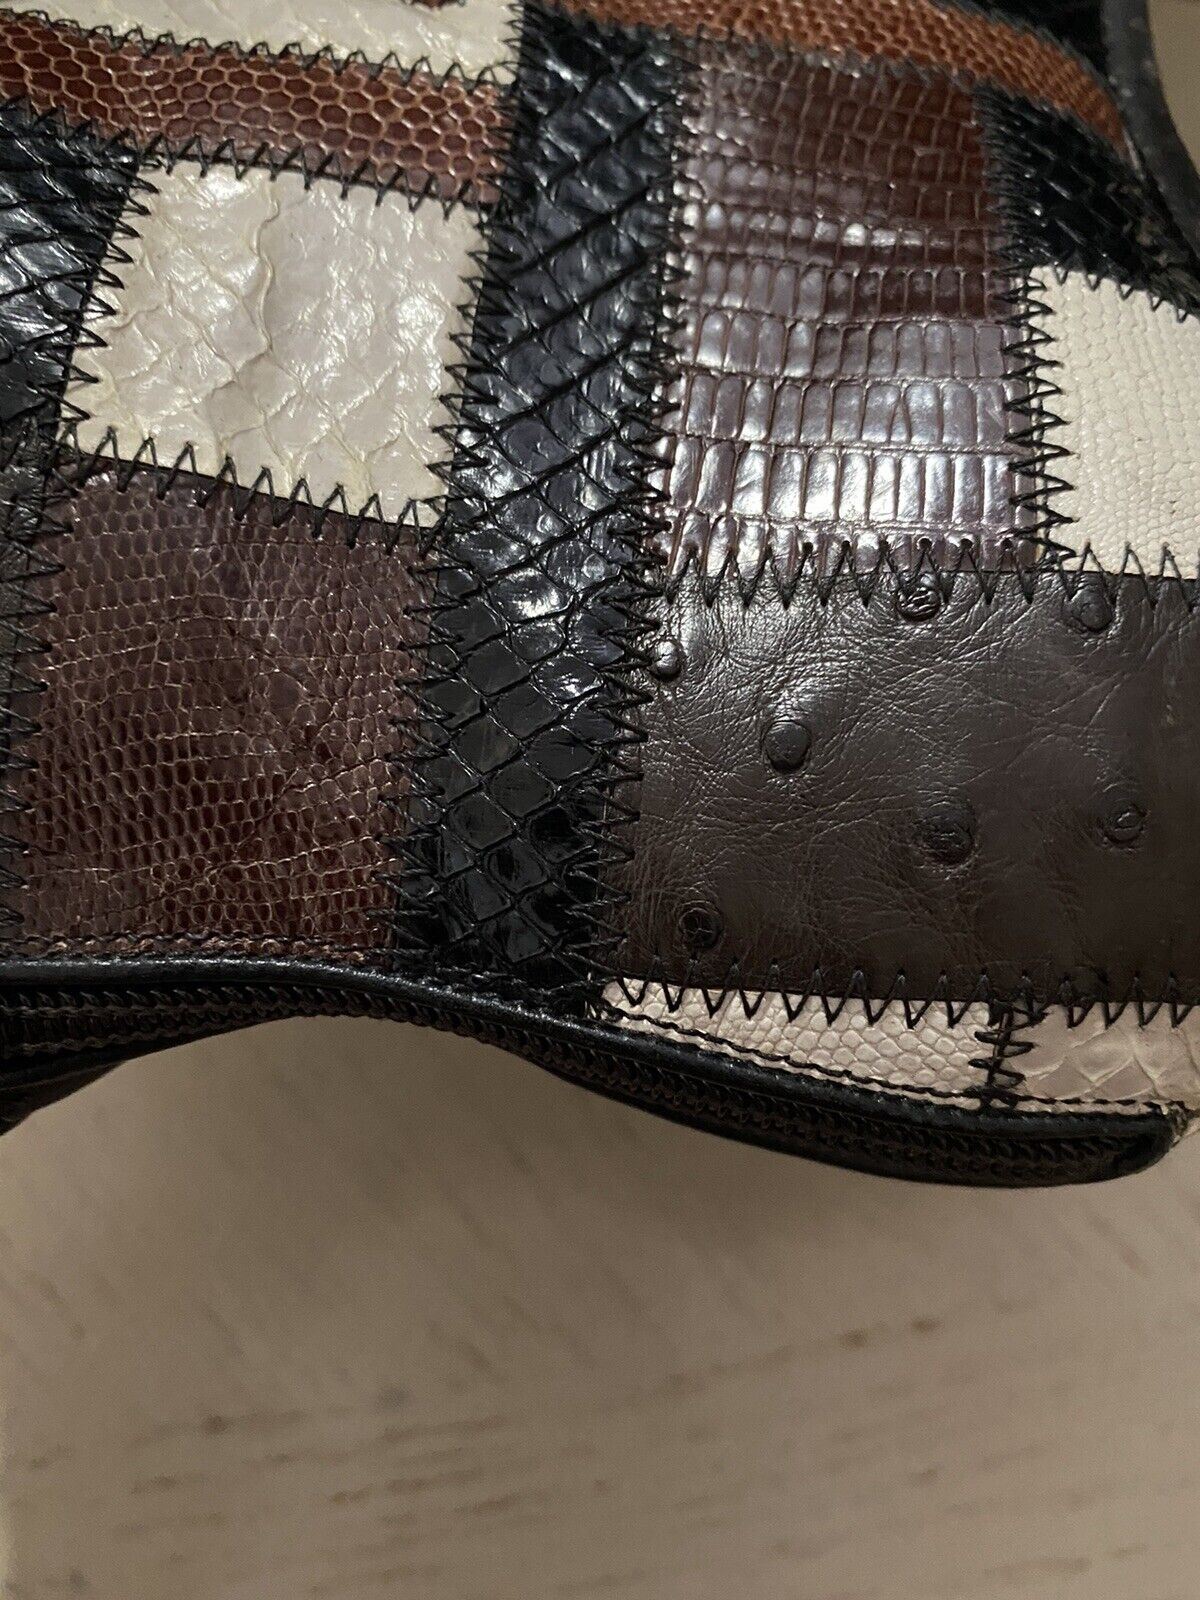 NIB $ 5500 Saint Laurent Miles Stiefel in exotischen Häuten Patchwork Braun 8 US/41 Eu